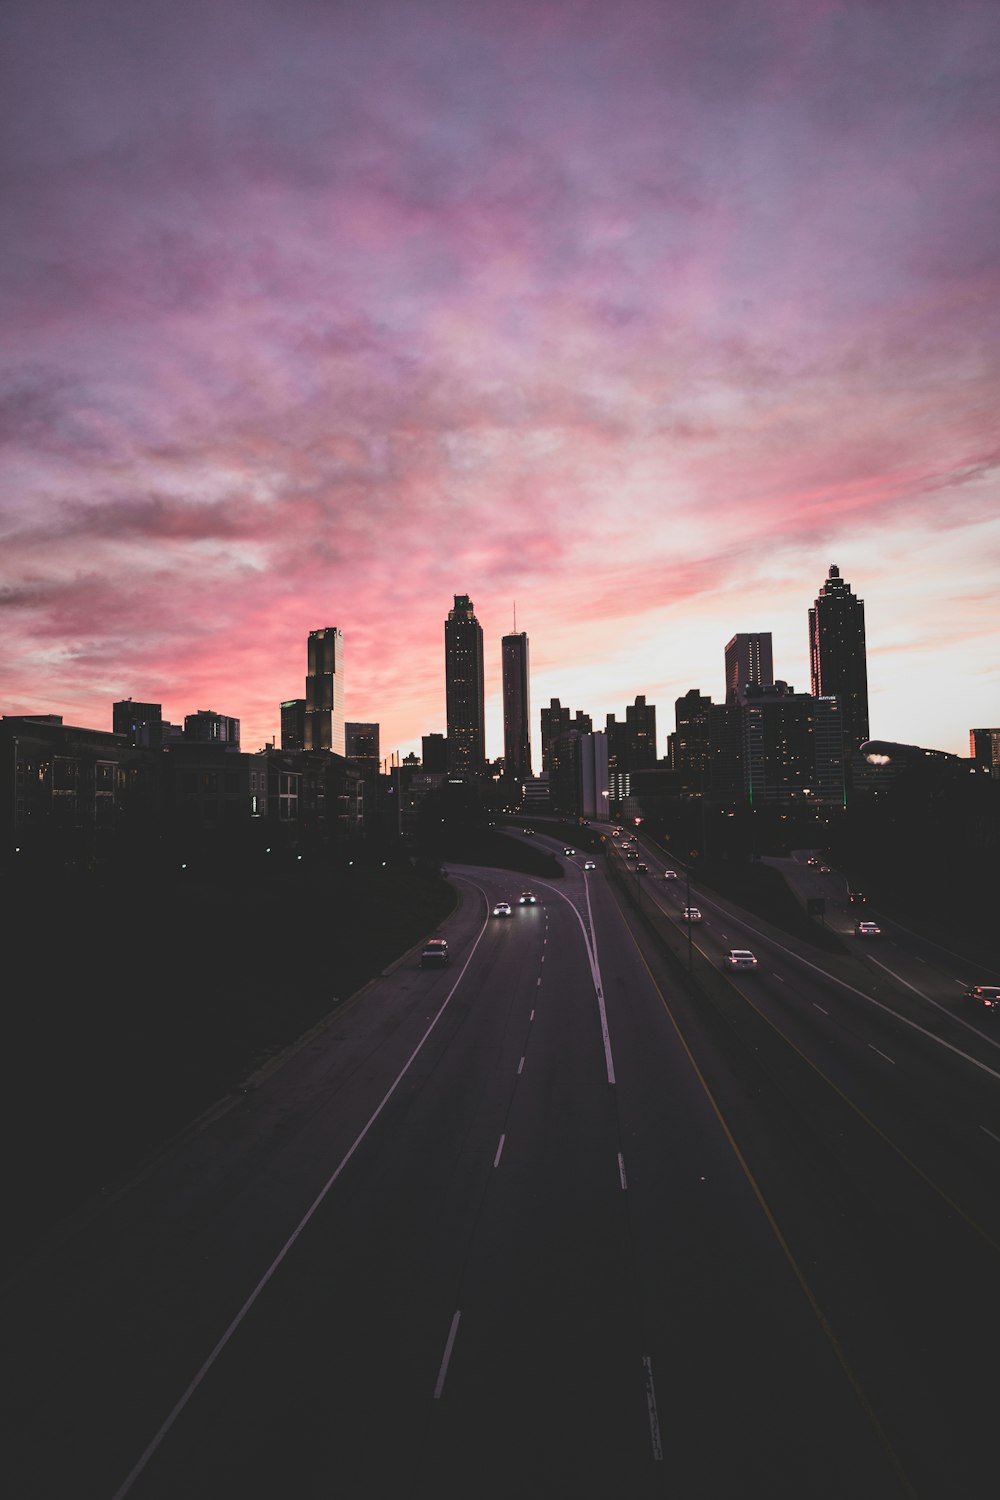 Voitures voyageant sur l’autoroute sous un ciel nuageux gris et rose au coucher du soleil